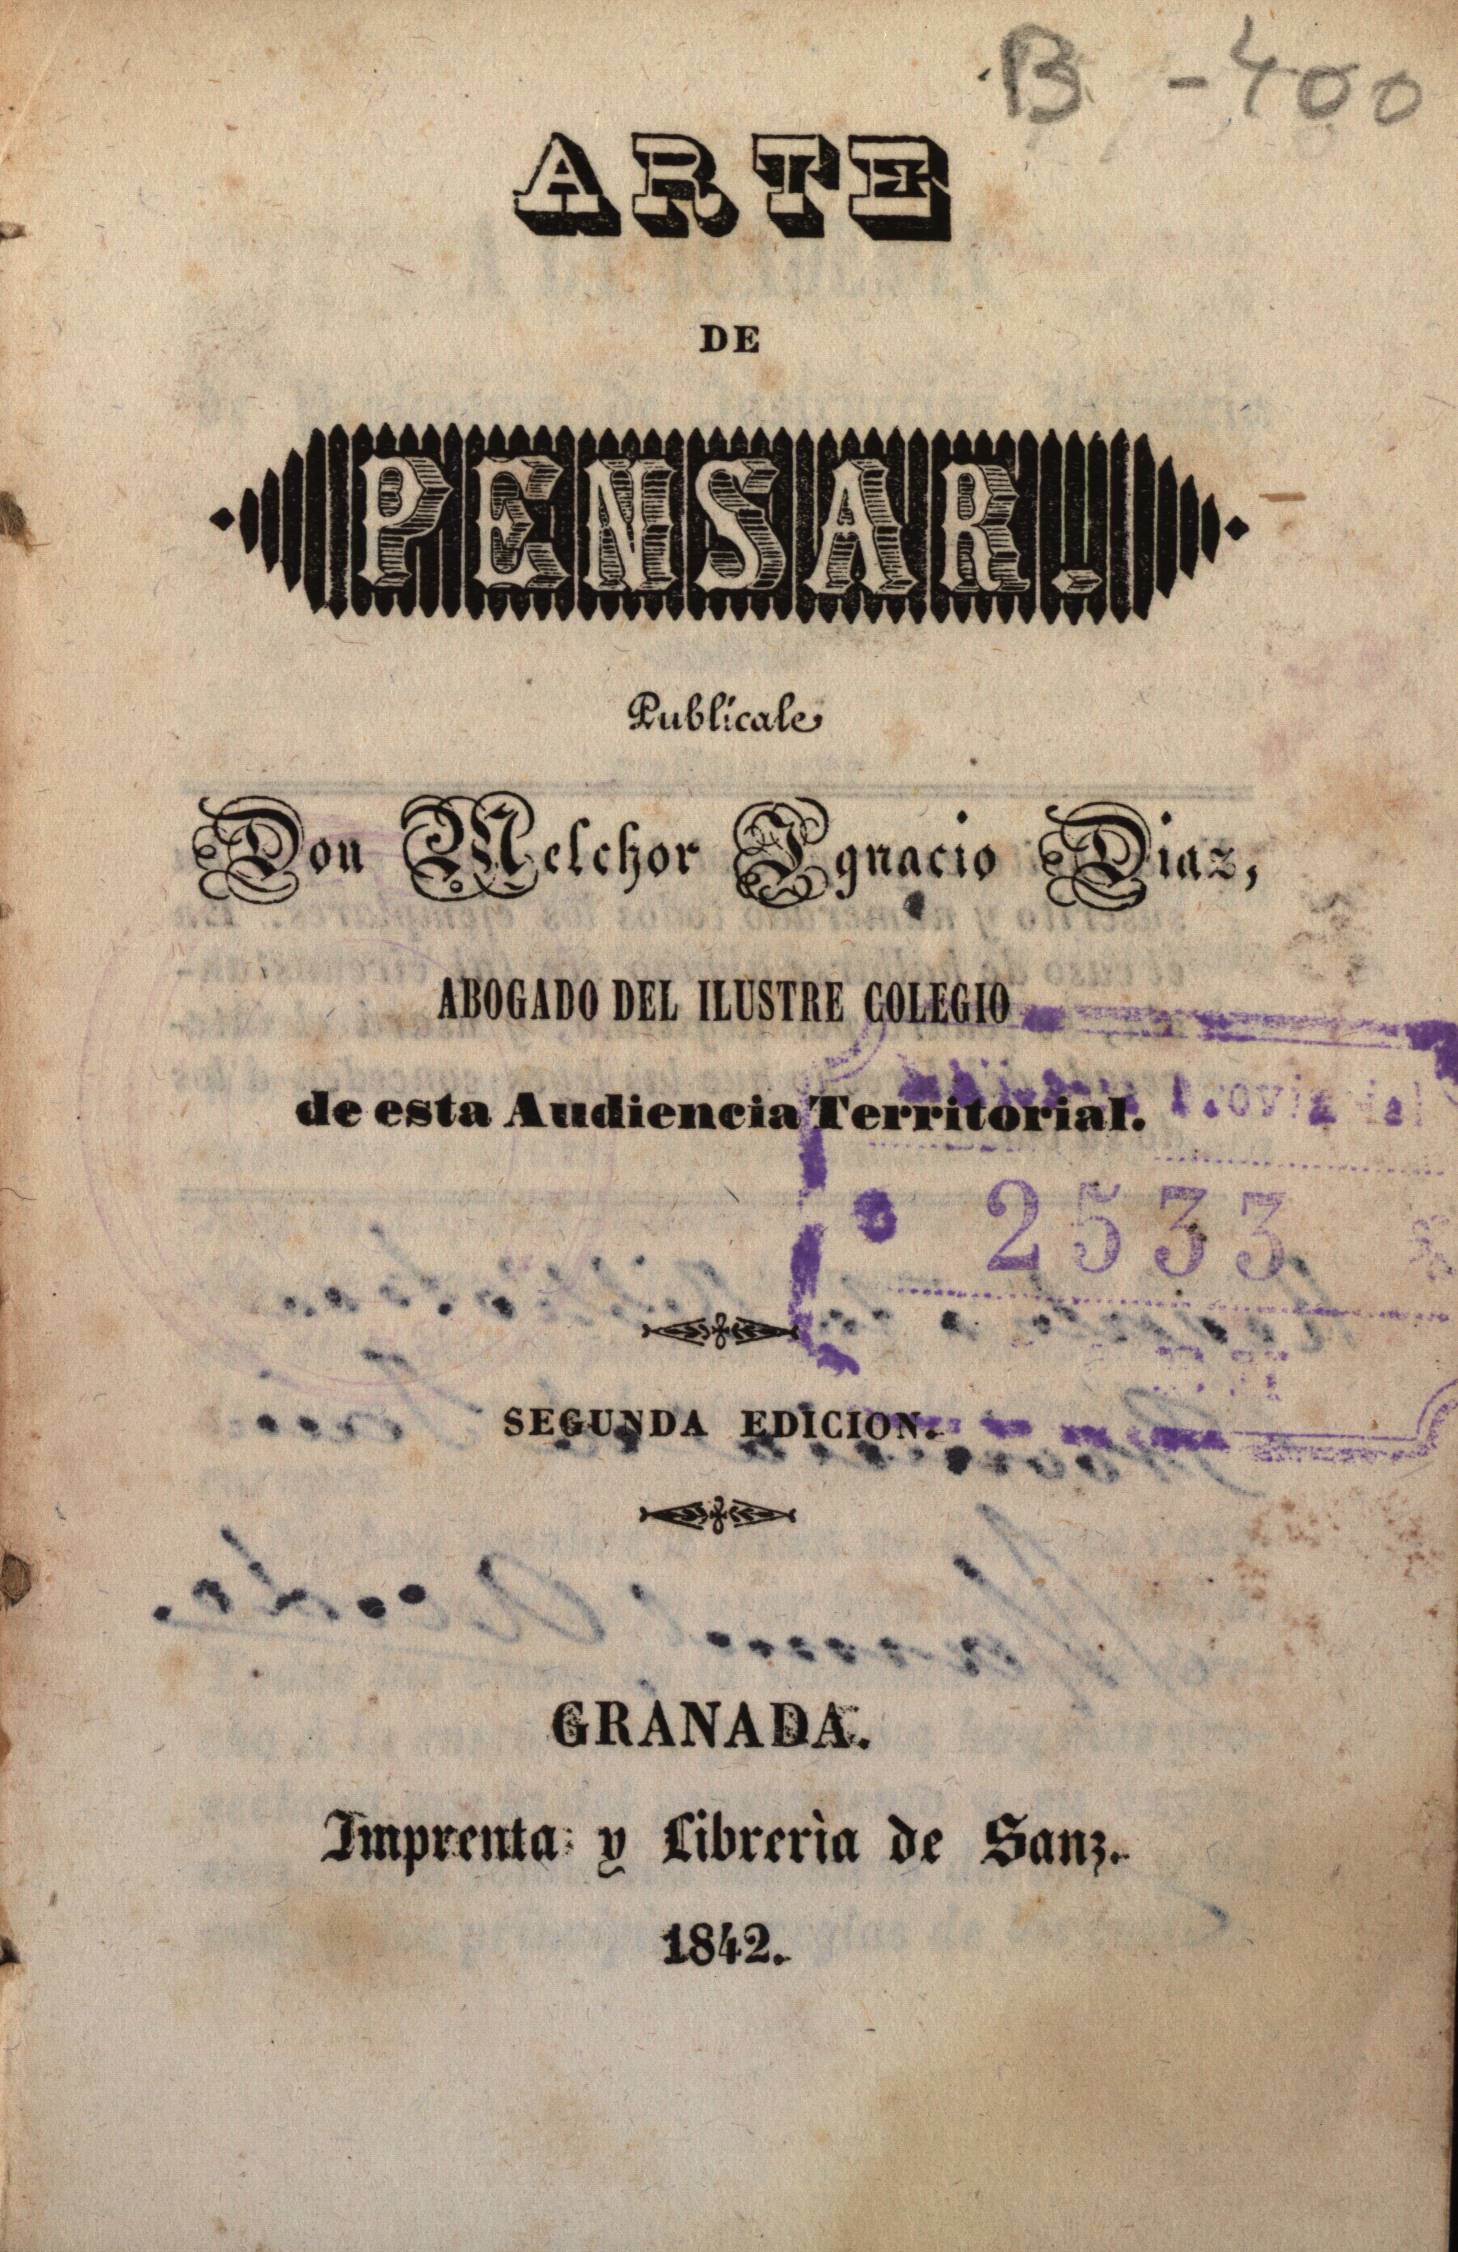 Arte de pensar, publícale Melchor Ignacio Diaz. Segunda edicion, Granada, 1842